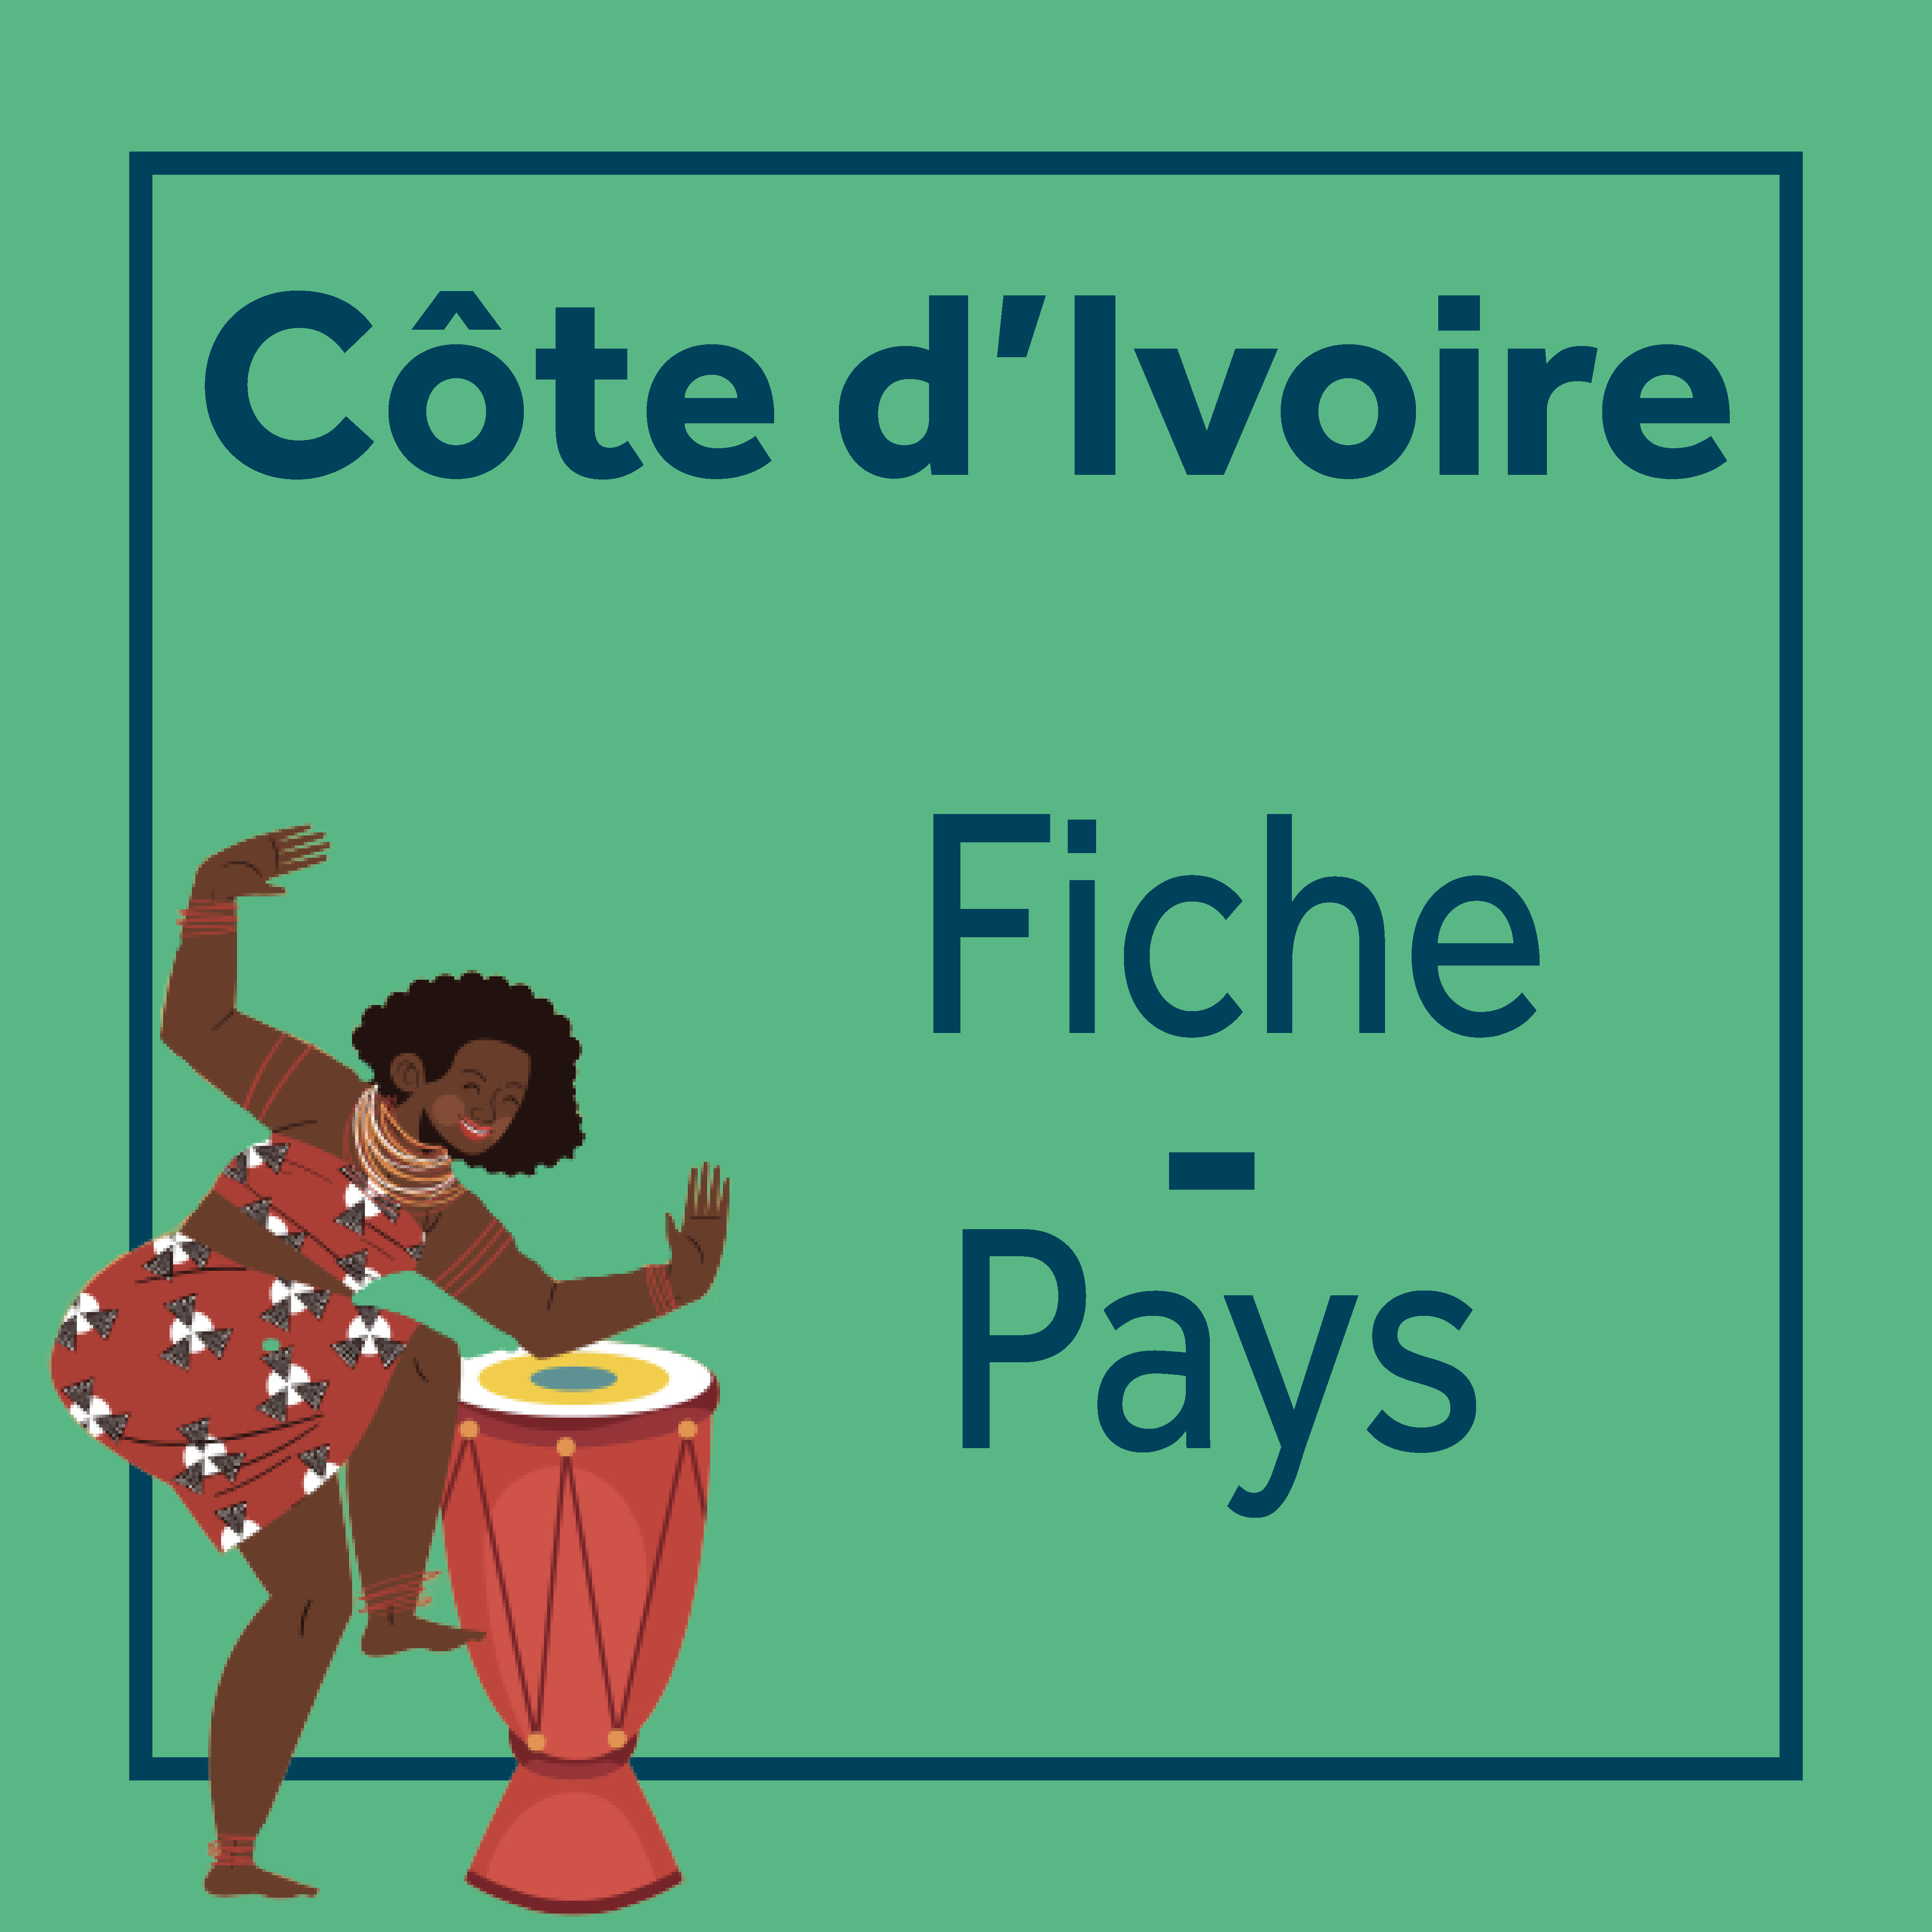 fiche pays Côte d'Ivoire